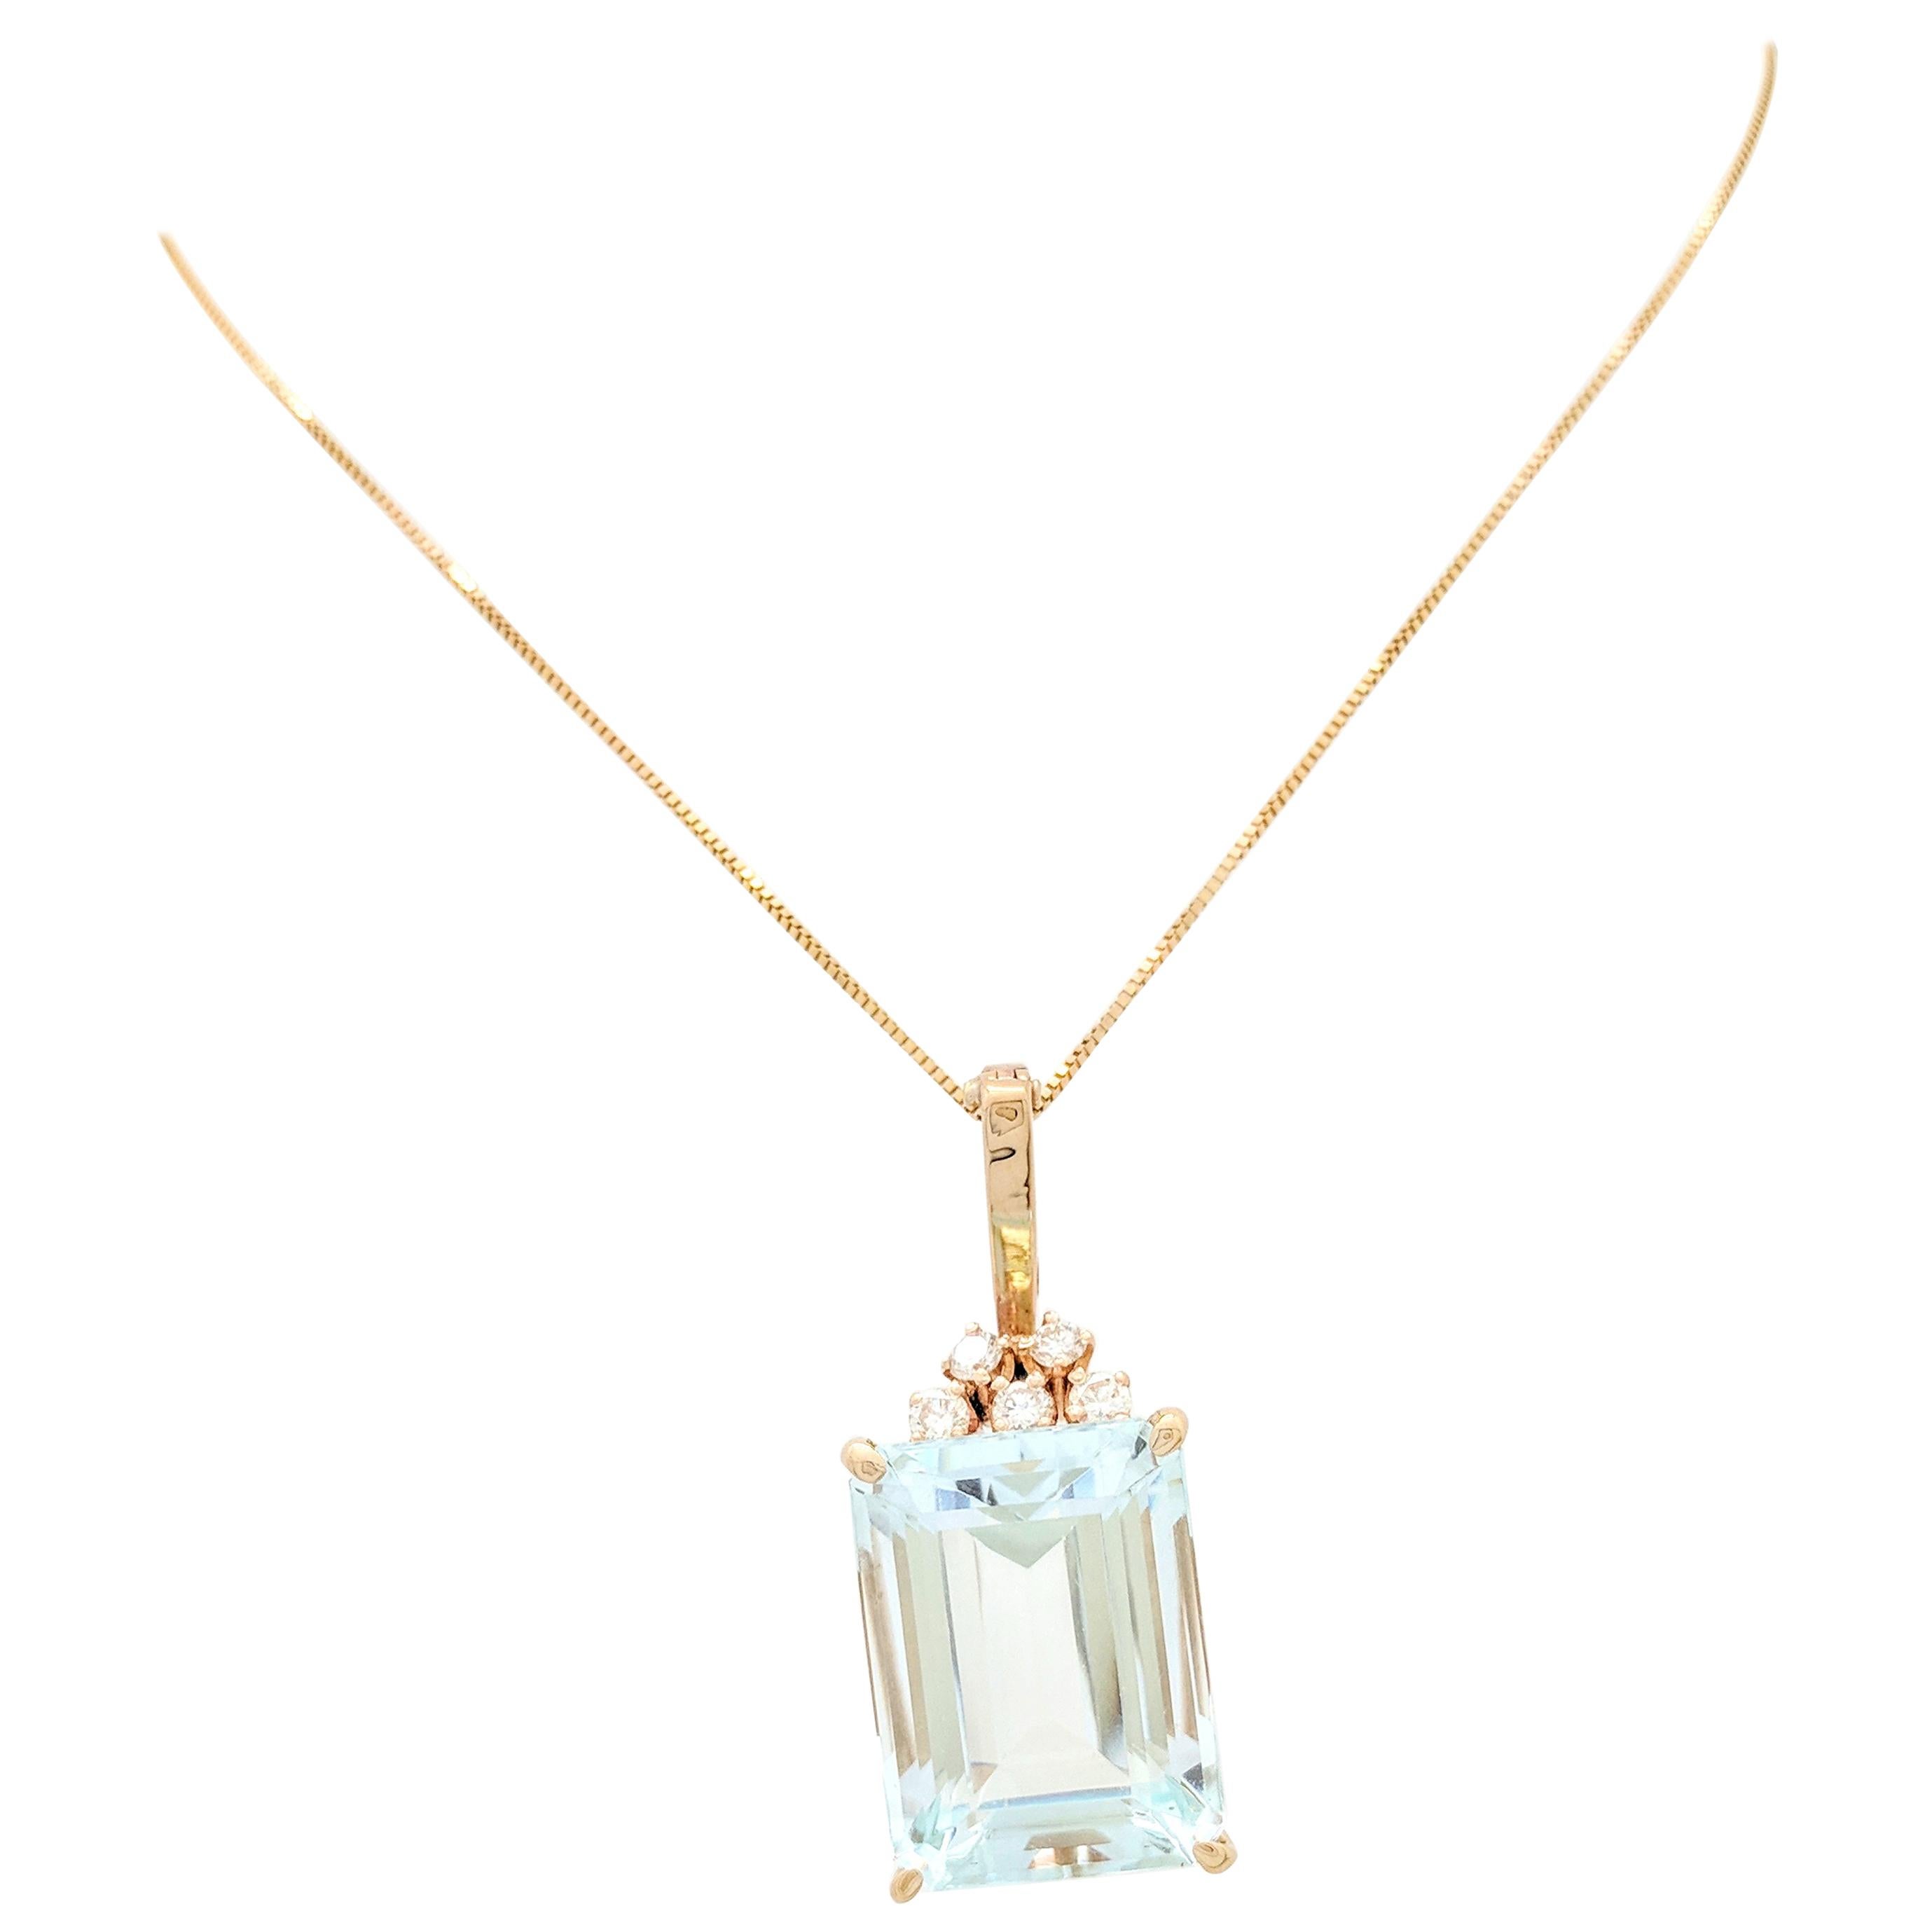 14 Karat Yellow Gold 21 Carat Aquamarine and Diamond Pendant Necklace 12.2 Grams